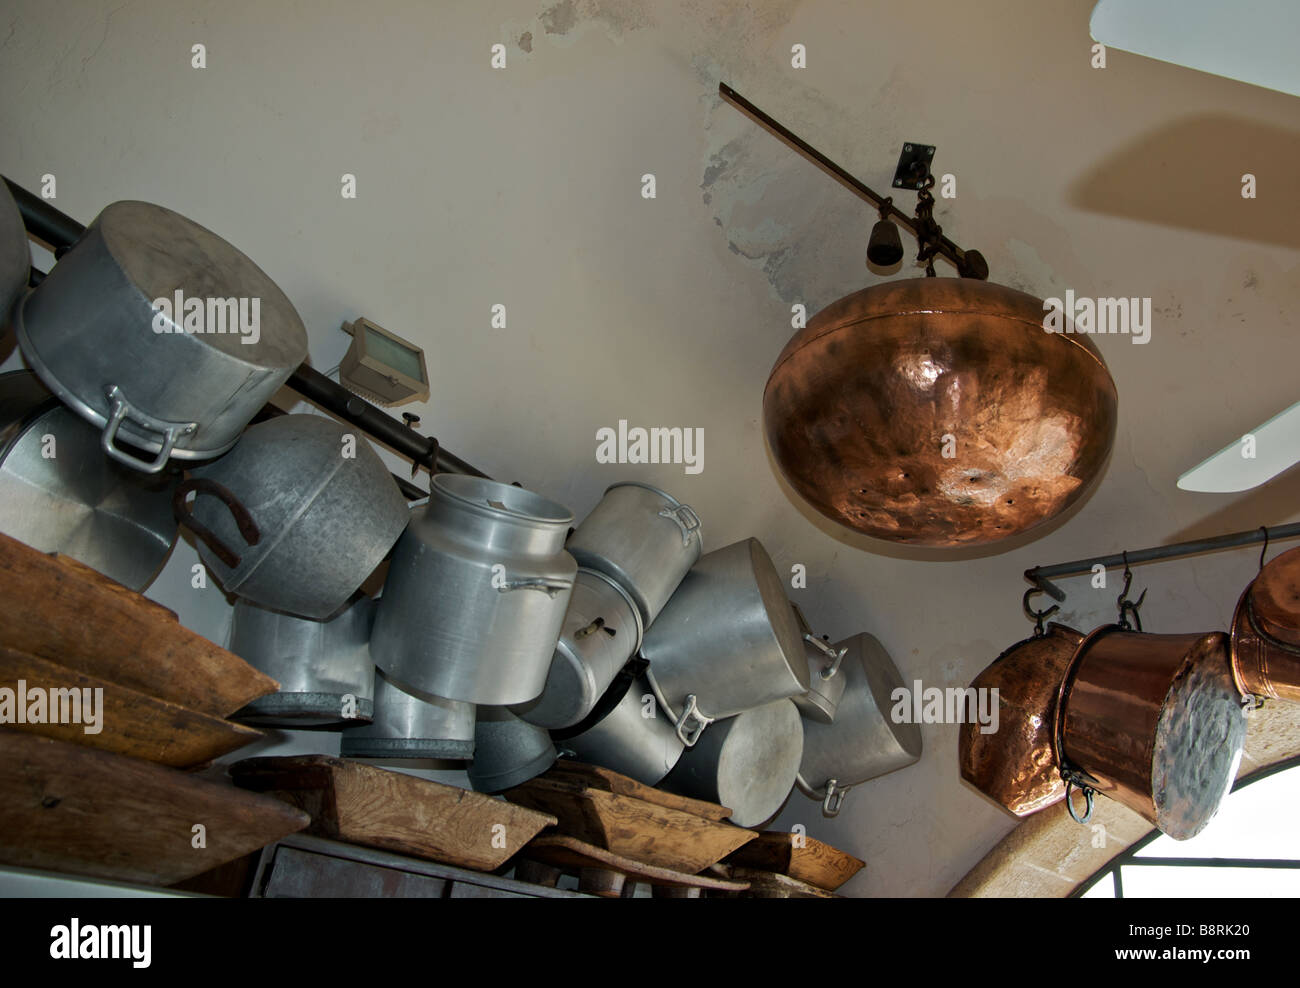 Anzeige von Aluminium Kupfer Kochtöpfe und geschnitzte hölzerne Schüsseln Ilana Goor Museum Kunst Galerie Stockfoto